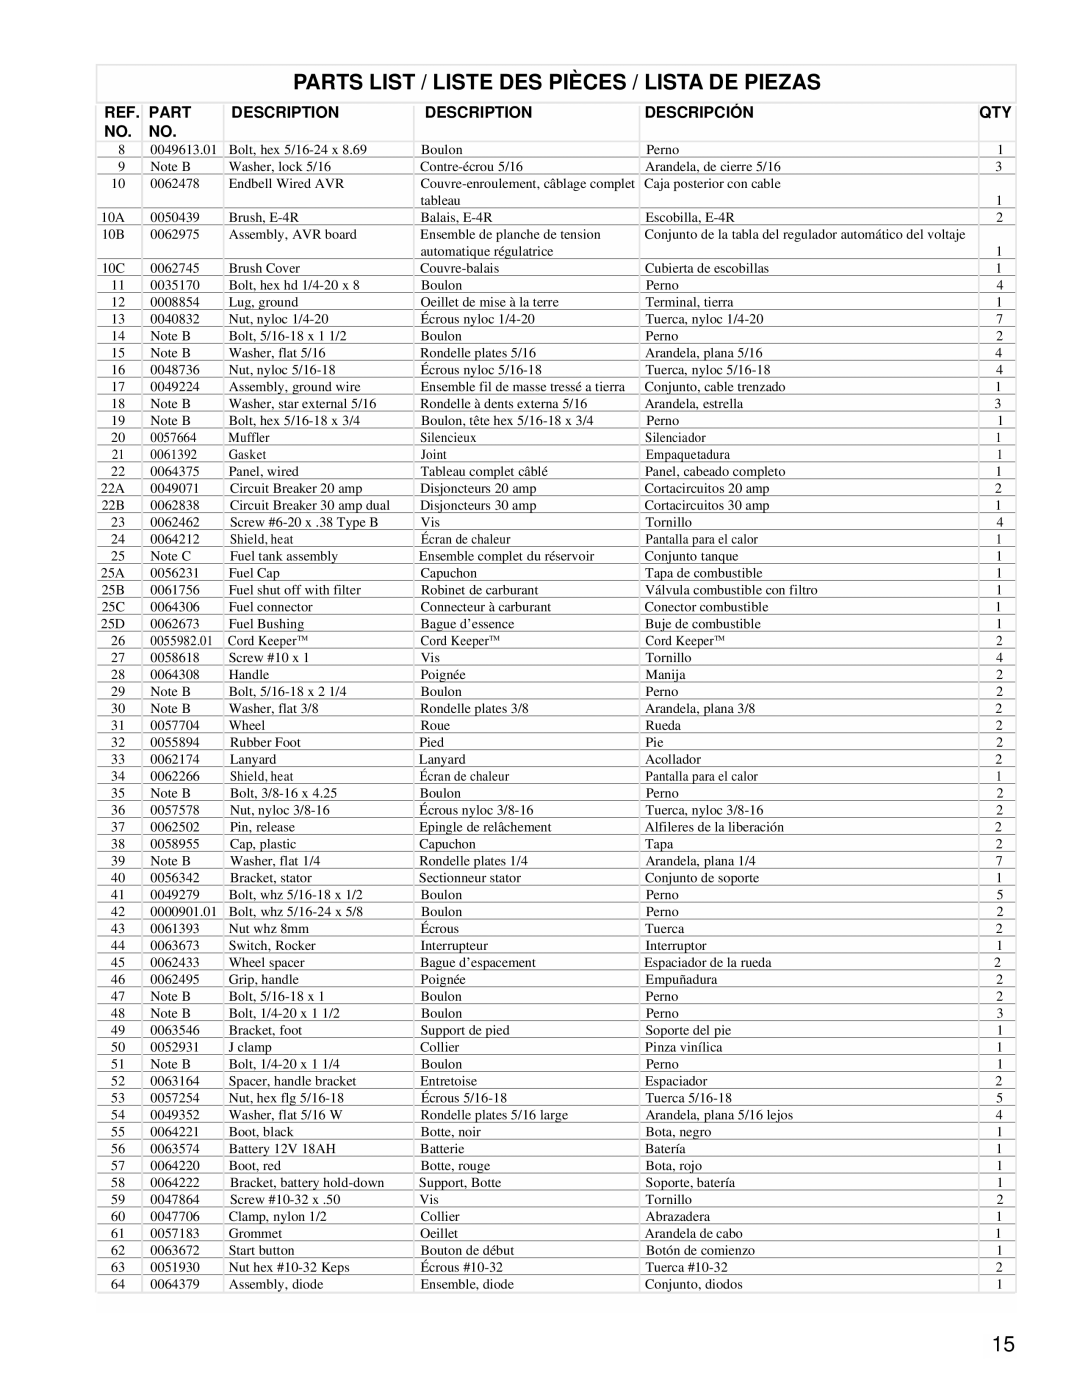 Powermate PMC496751 manual Parts List / Liste Des Pièces / Lista De Piezas, Description, Descripción 